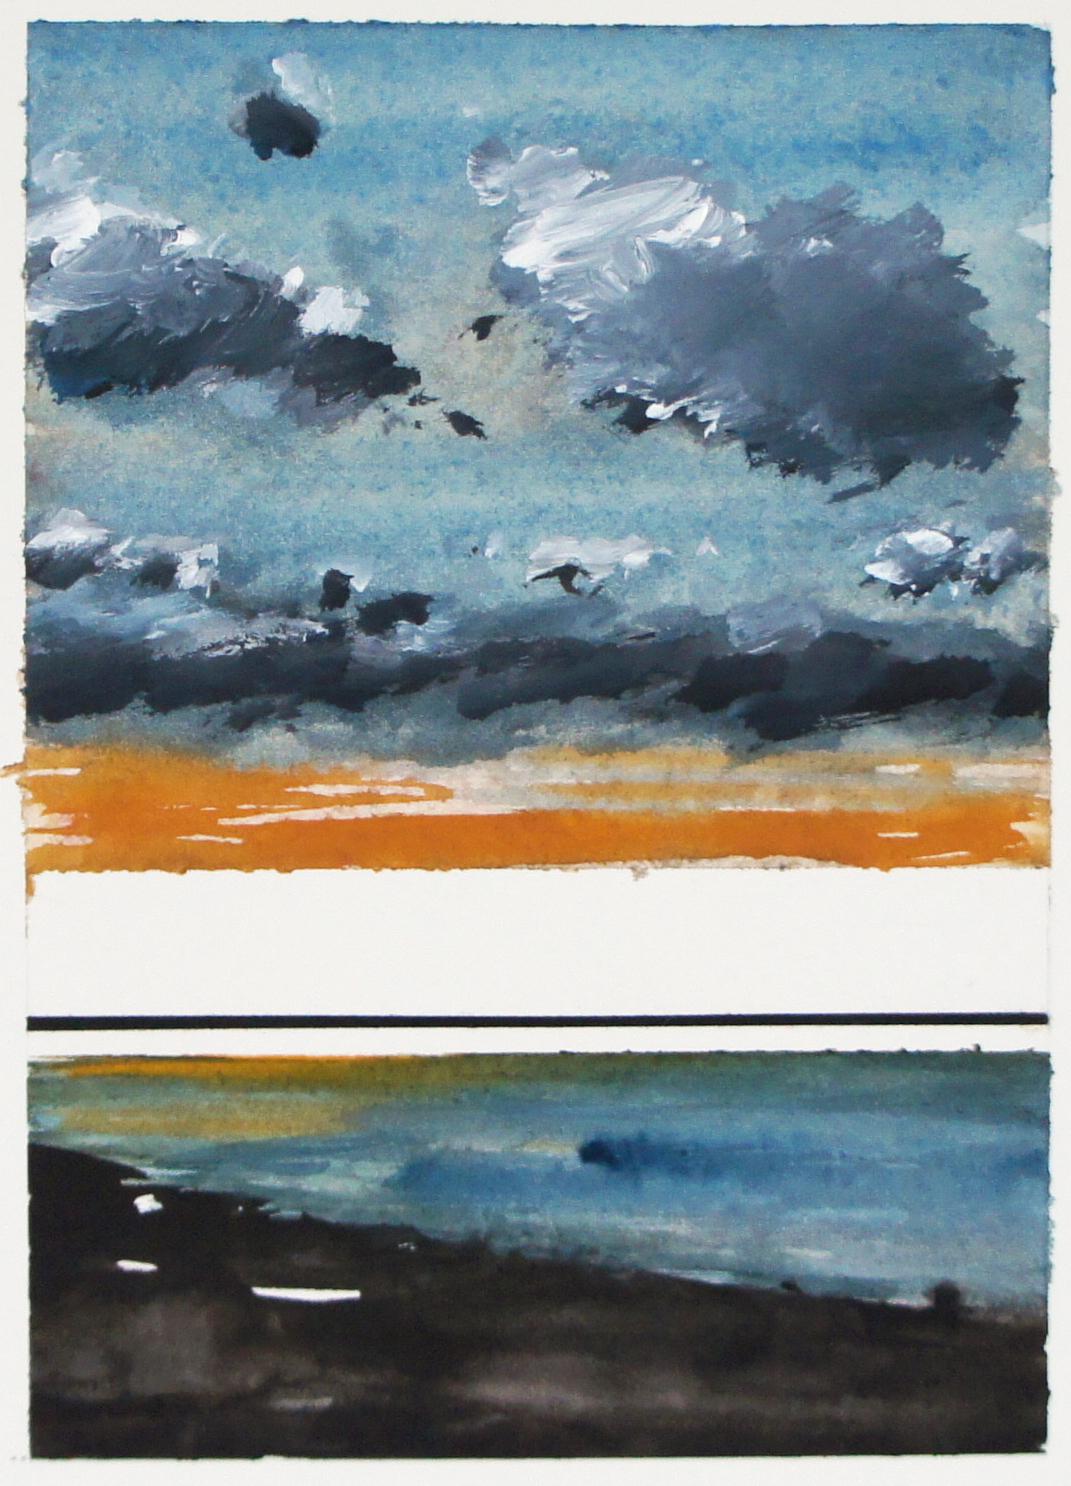 Motif(s) - Aquarelle, peinture de paysage contemporaine, bord de mer